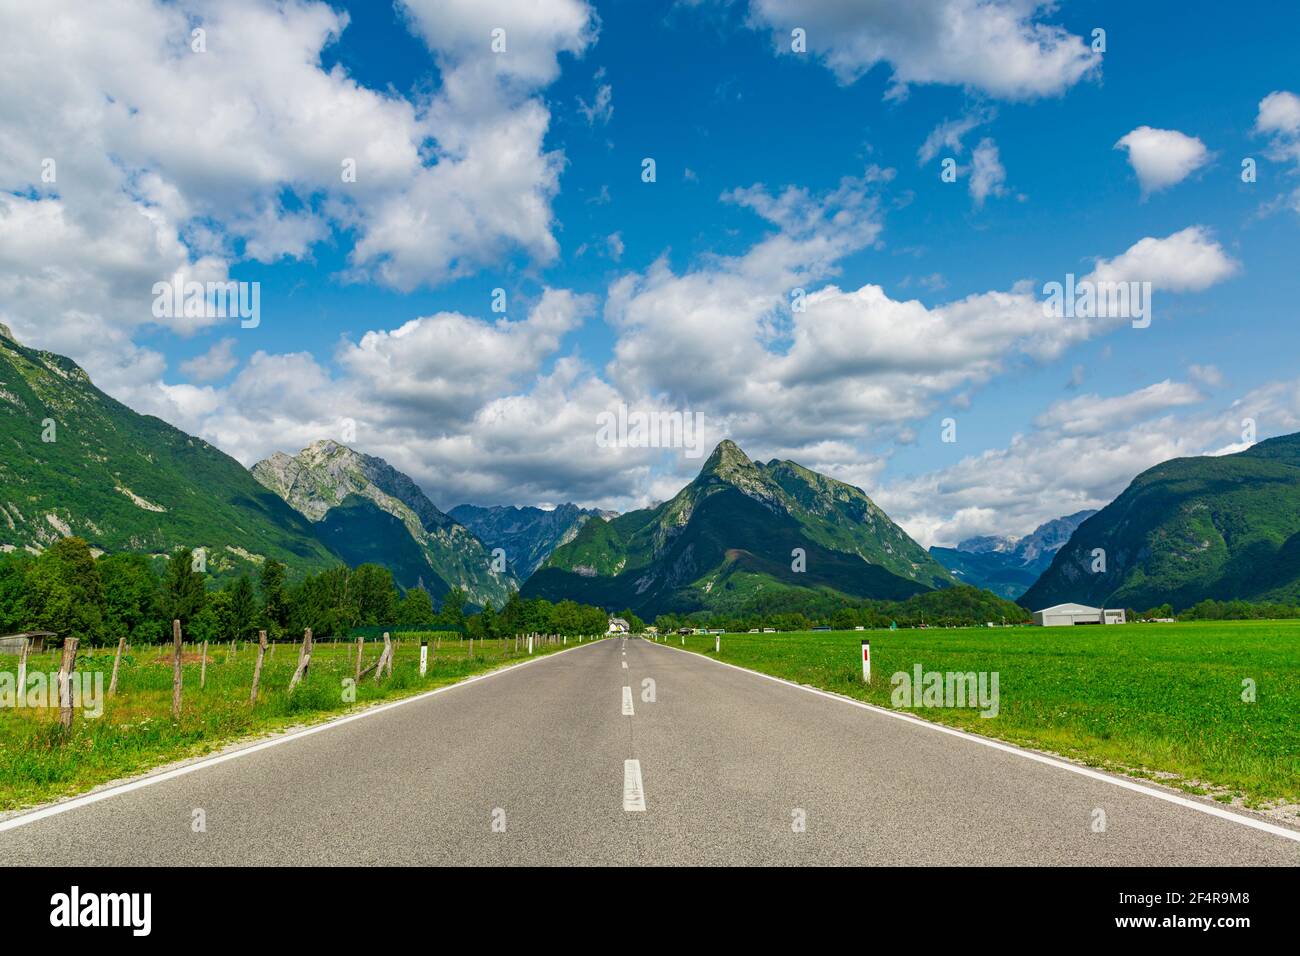 Strada asfaltata diritta attraverso i verdi pascoli in una splendida valle montana. Valle di Soca, Slovenia. La migliore destinazione d'Europa. Foto Stock